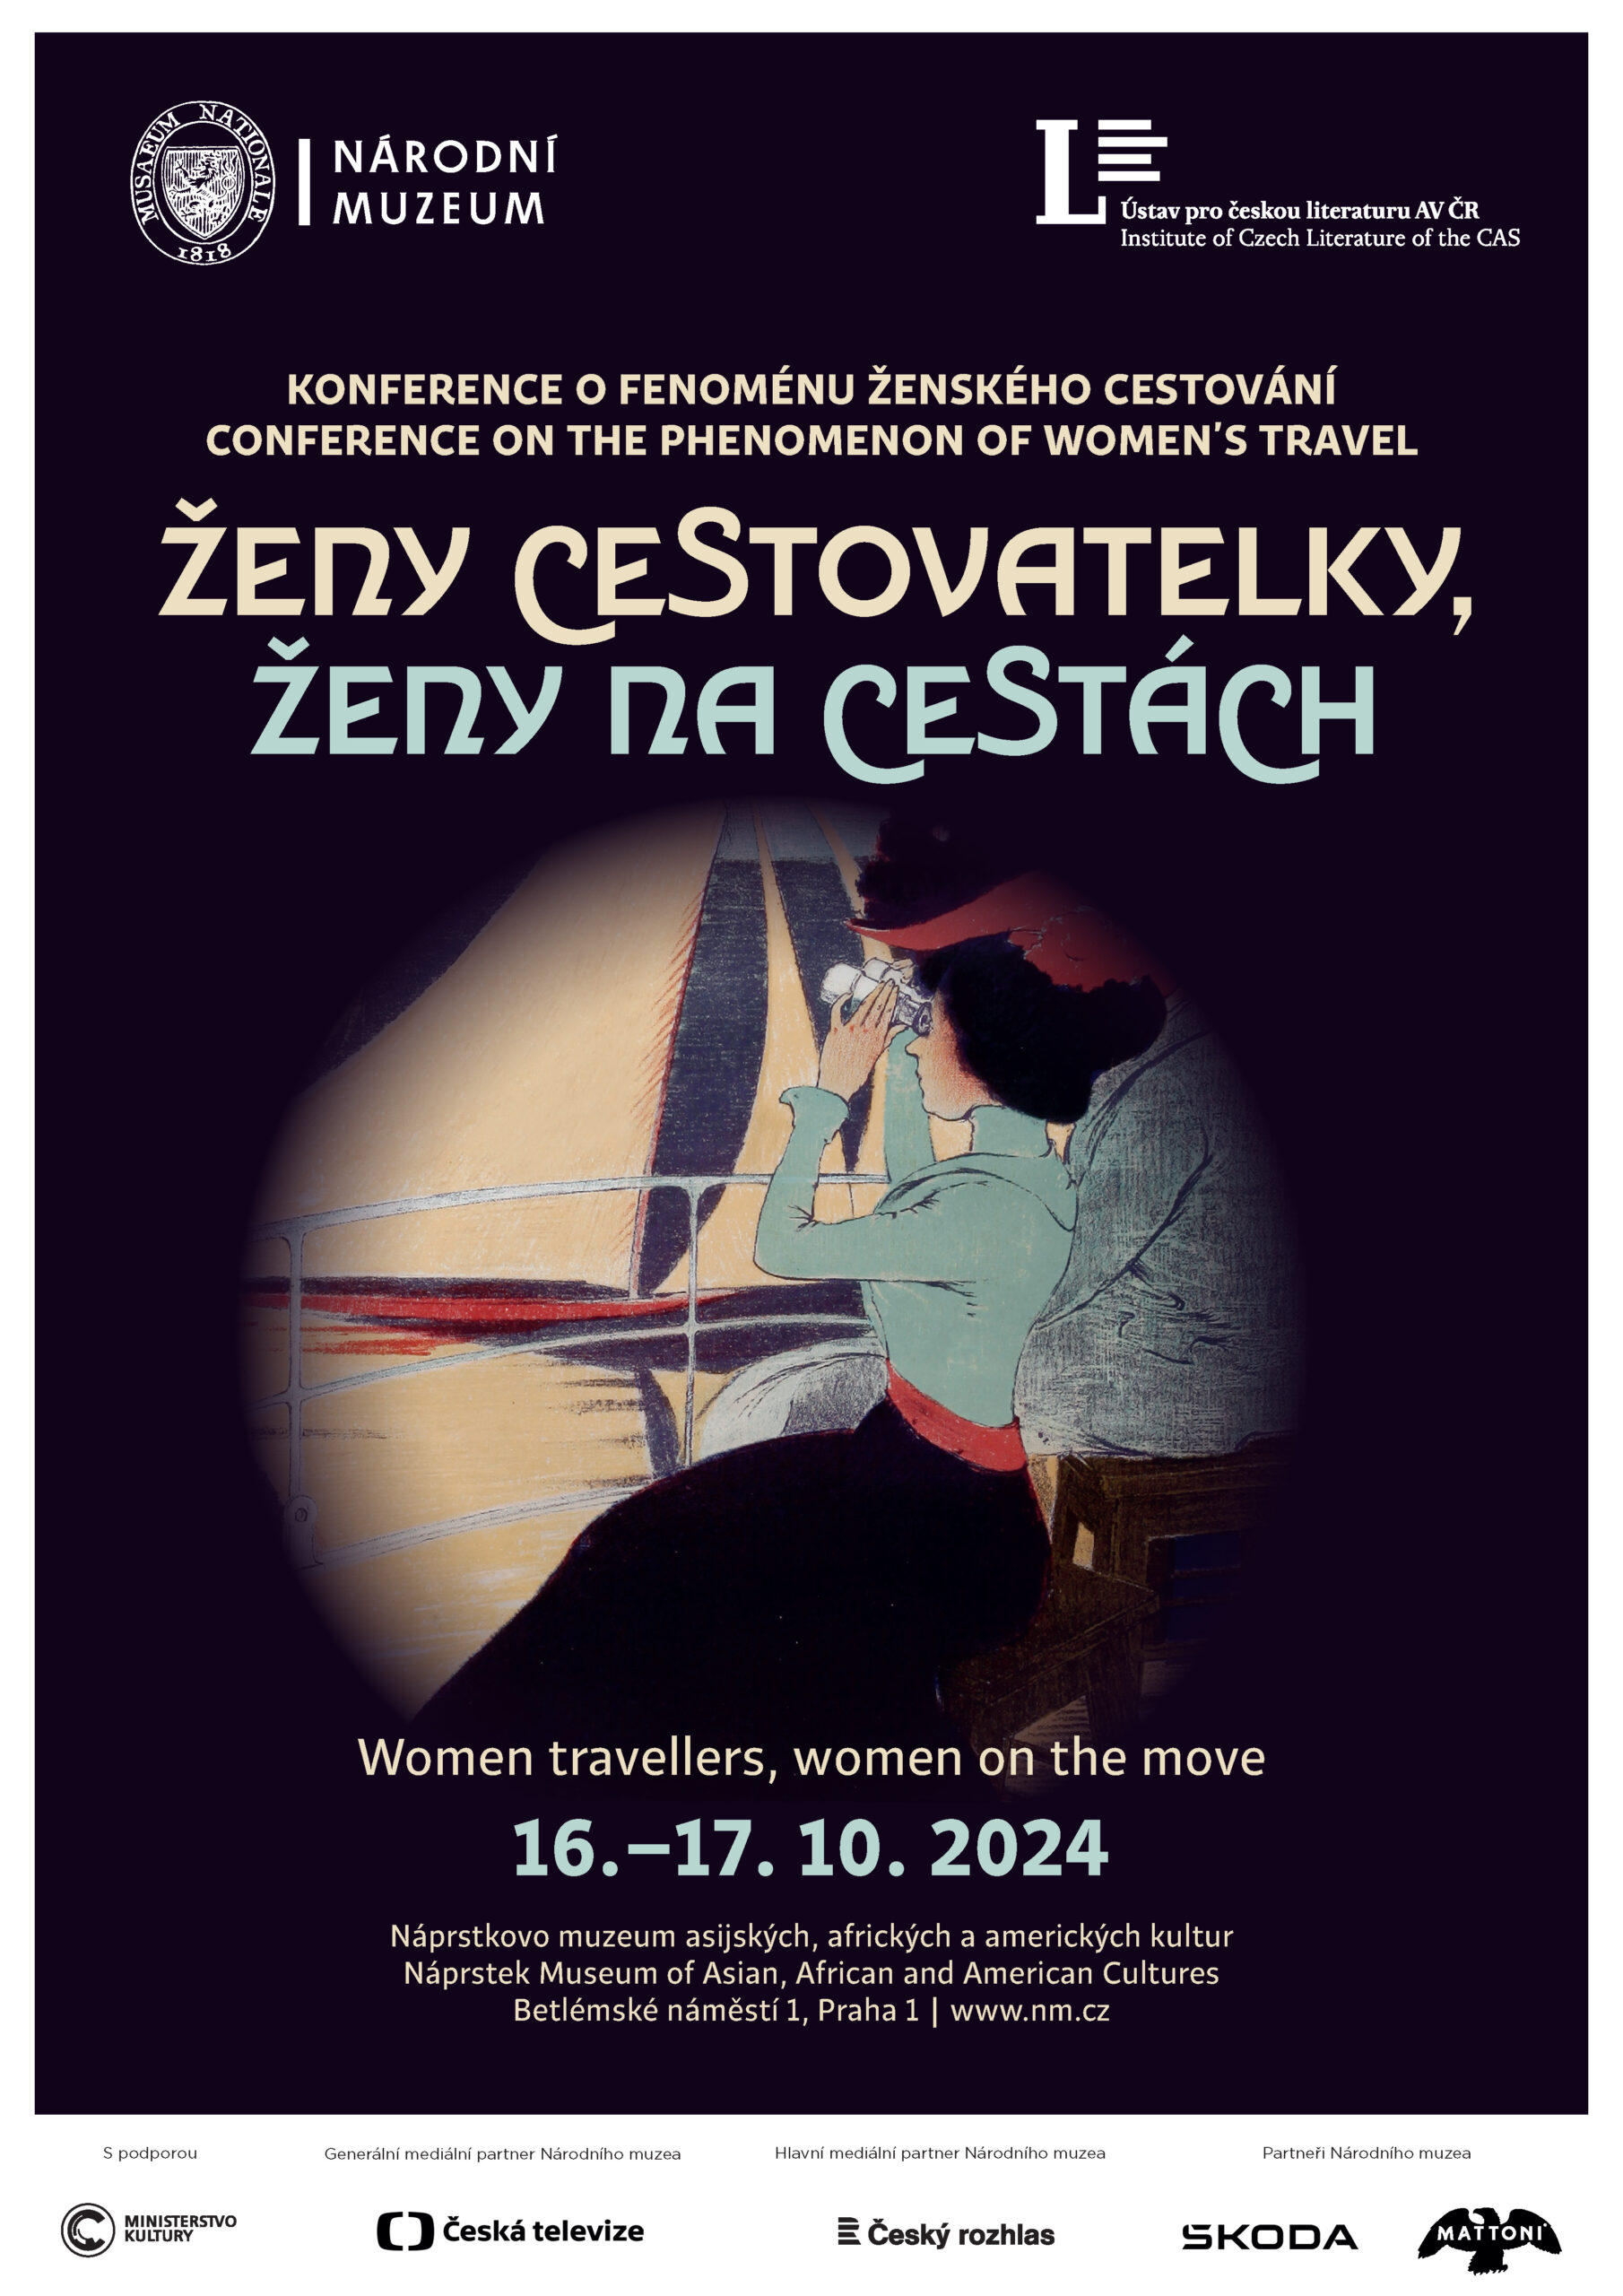 Konference Ženy cestovatelky, ženy na cestách (16.–17. 10. 2024)